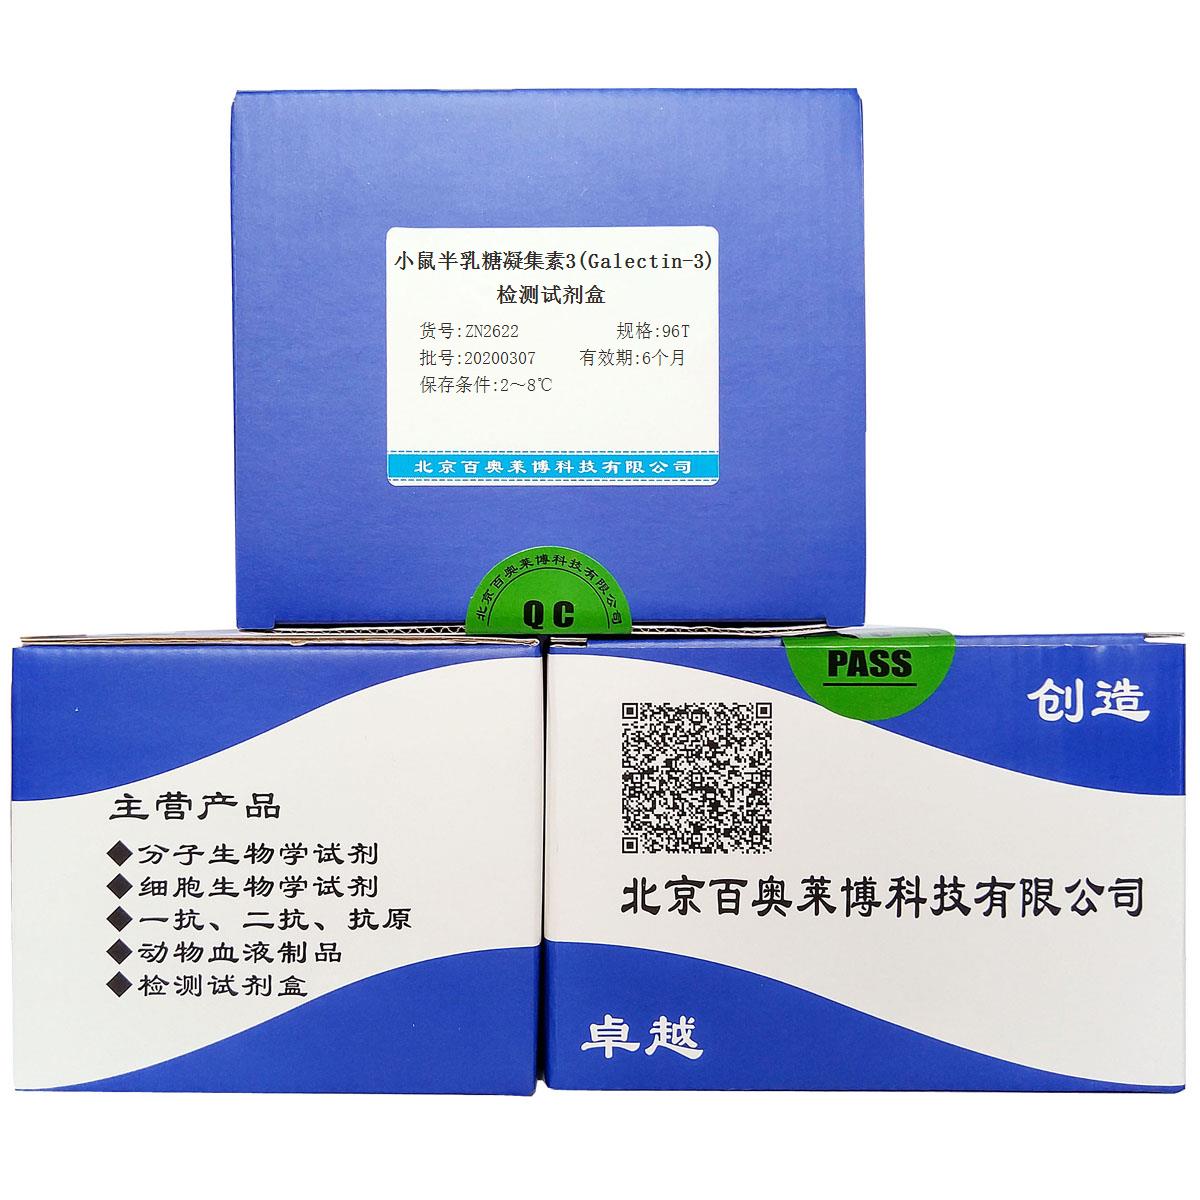 小鼠半乳糖凝集素3(Galectin-3)检测试剂盒